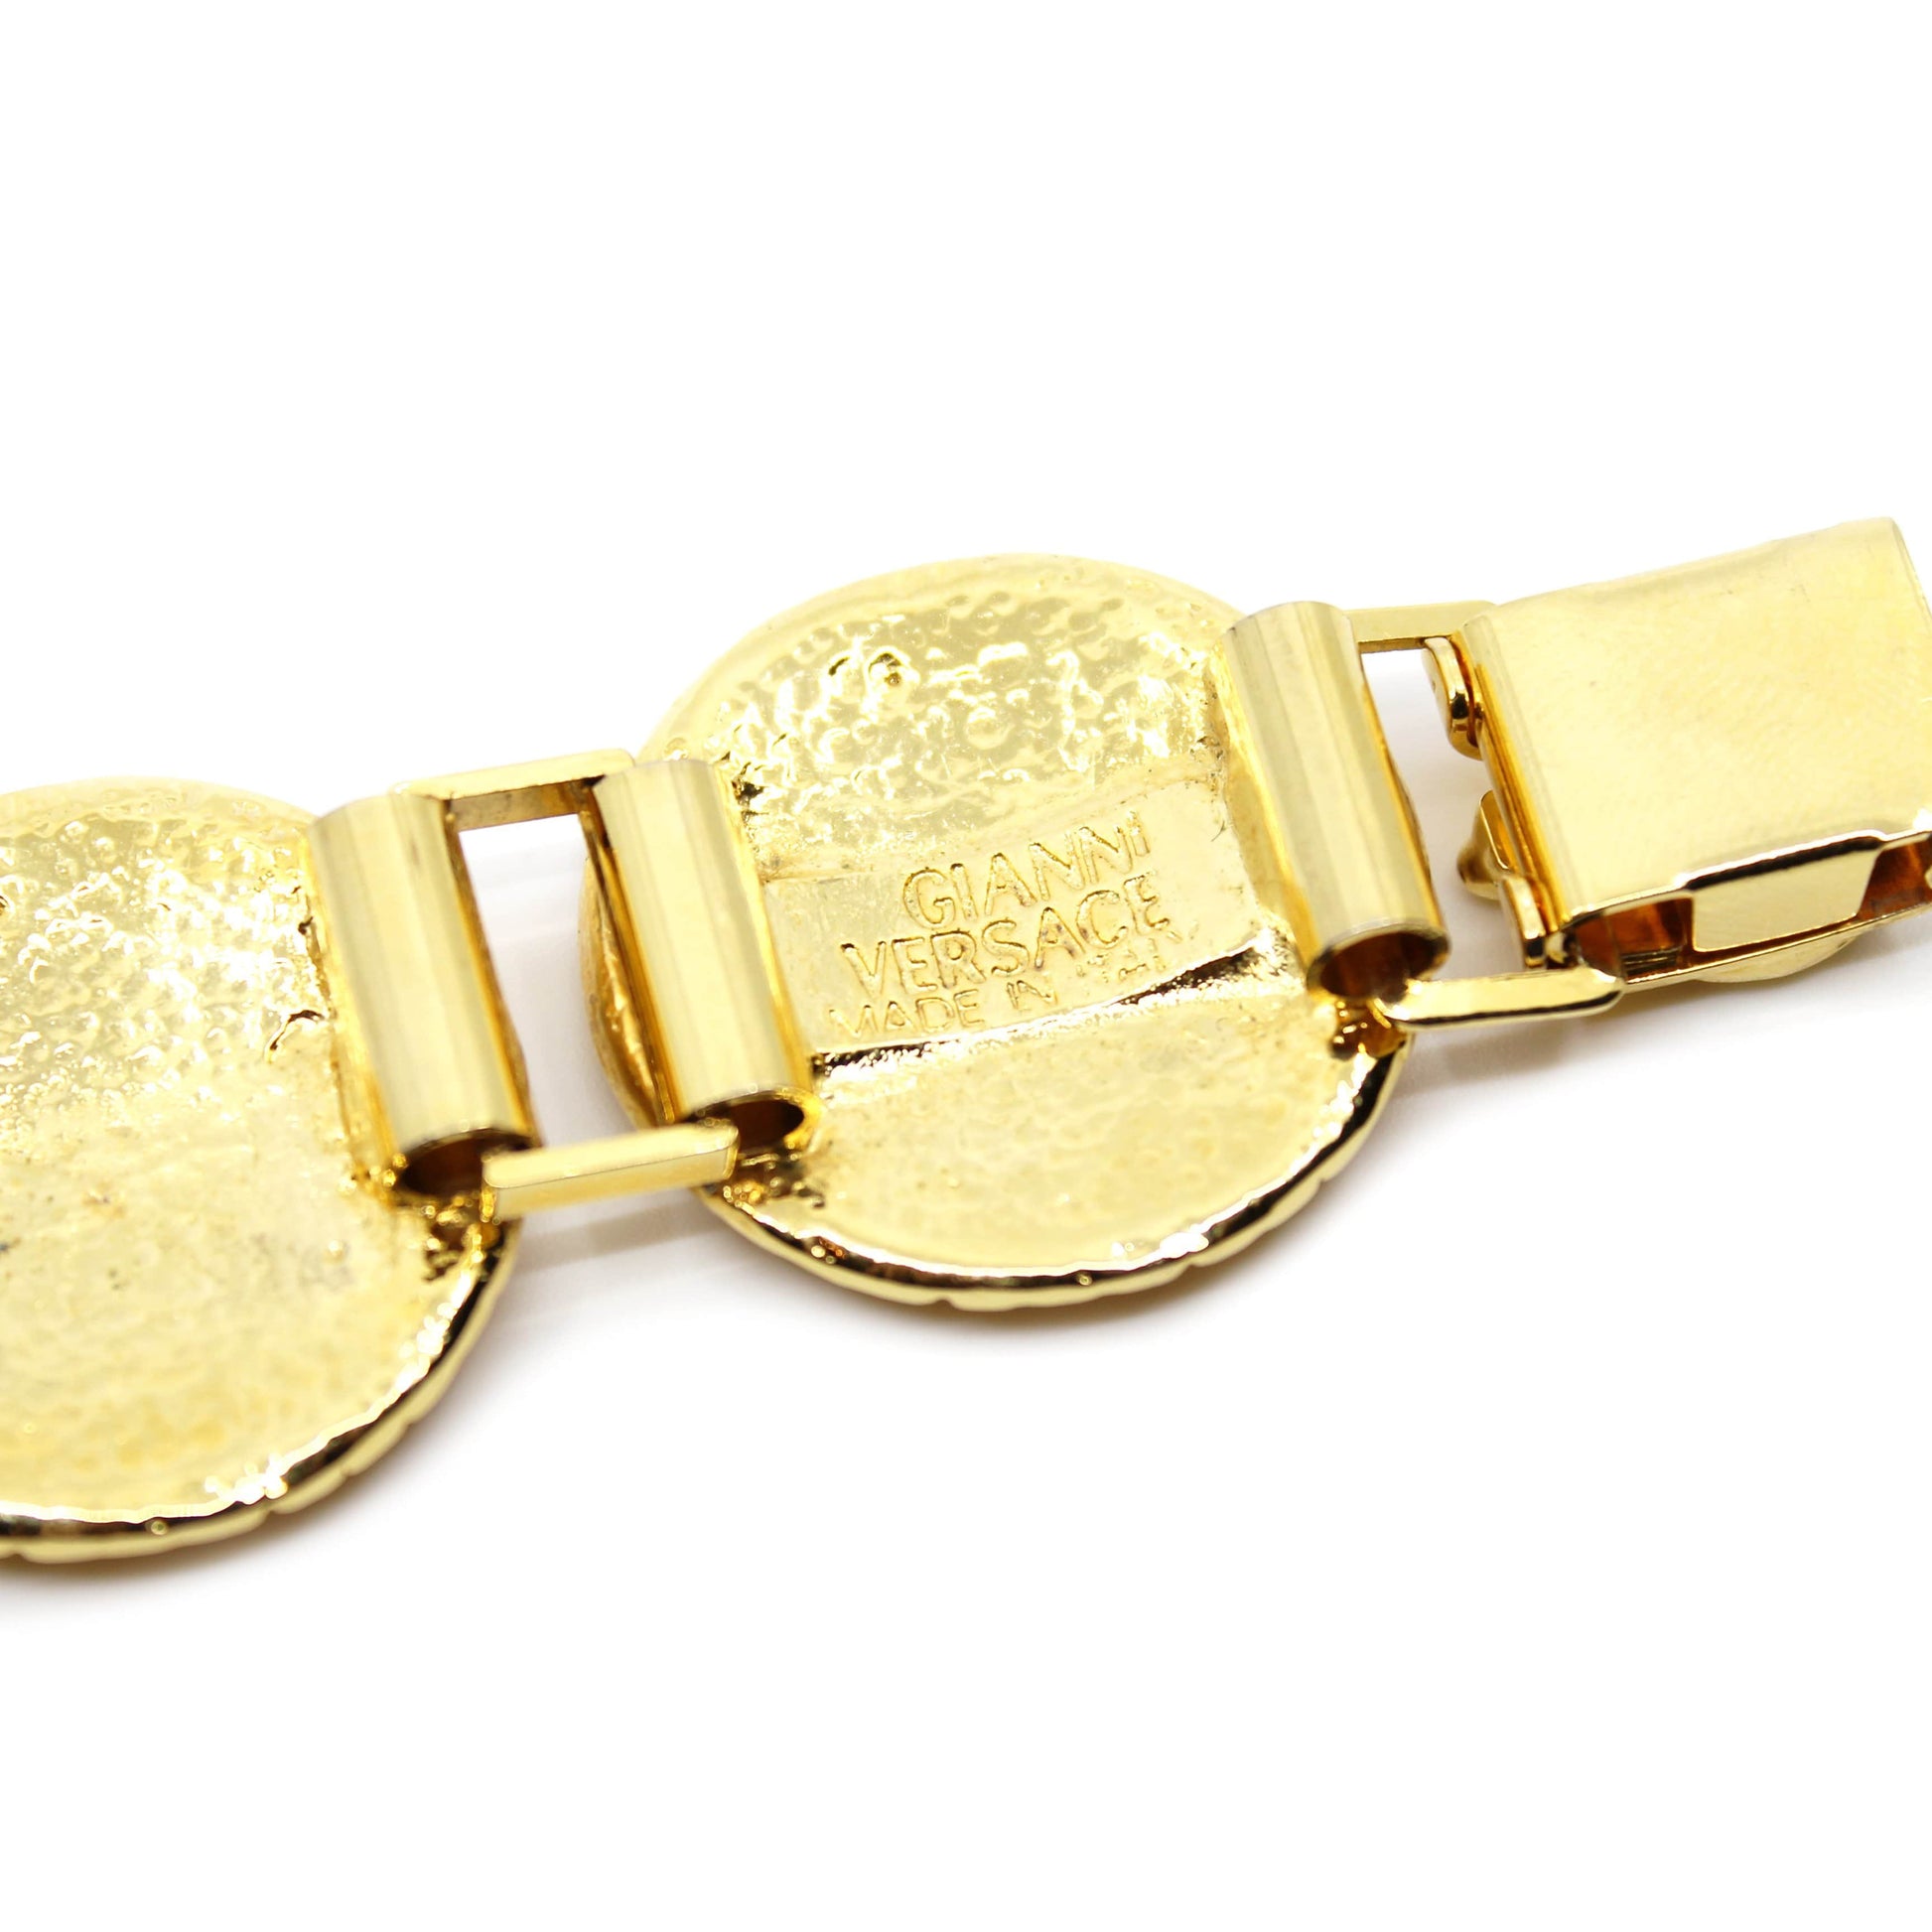 Gold Vintage Gianni Versace Medusa Head Coin Bracelet RSTKD Vintage